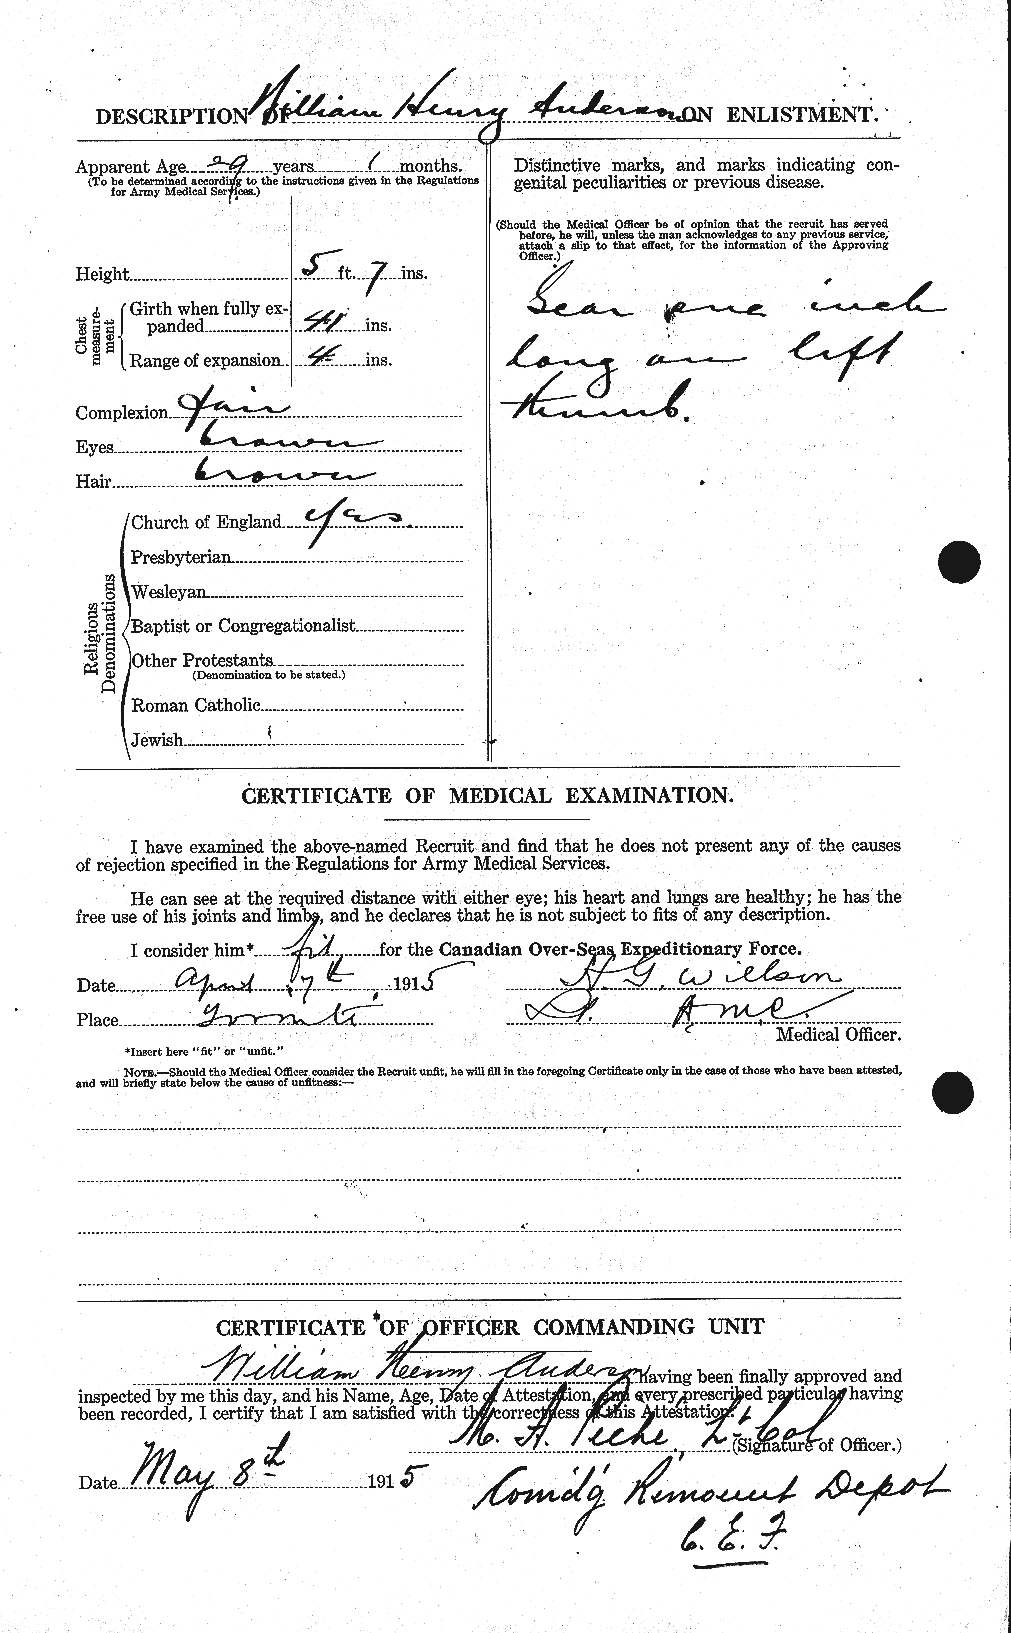 Dossiers du Personnel de la Première Guerre mondiale - CEC 210715b